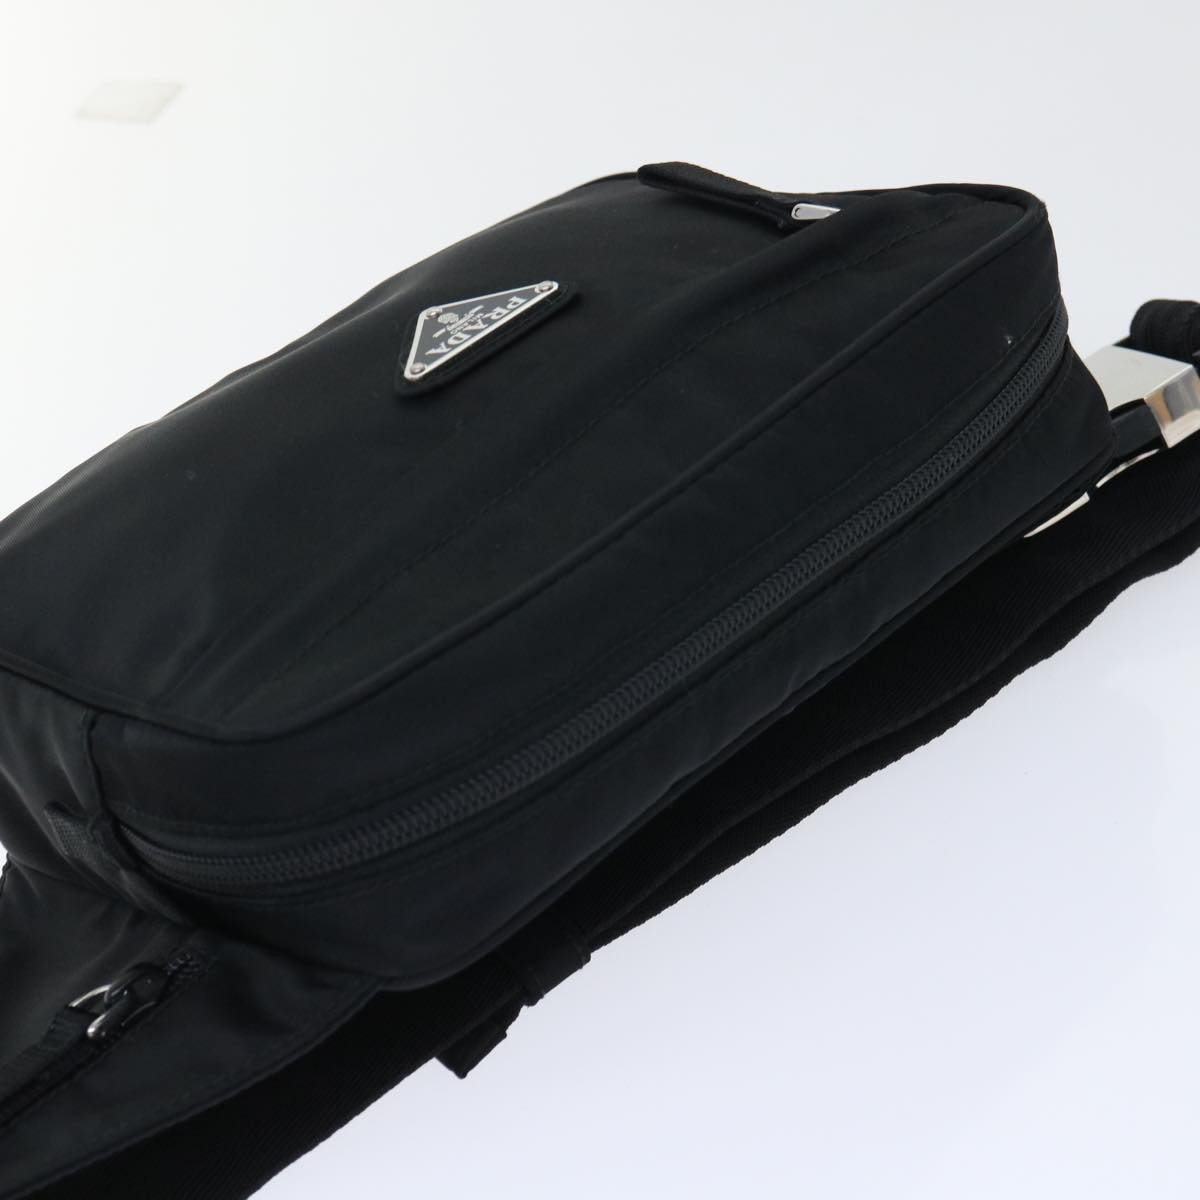 PRADA Waist bag Nylon Black 2VL001 Auth yk8186